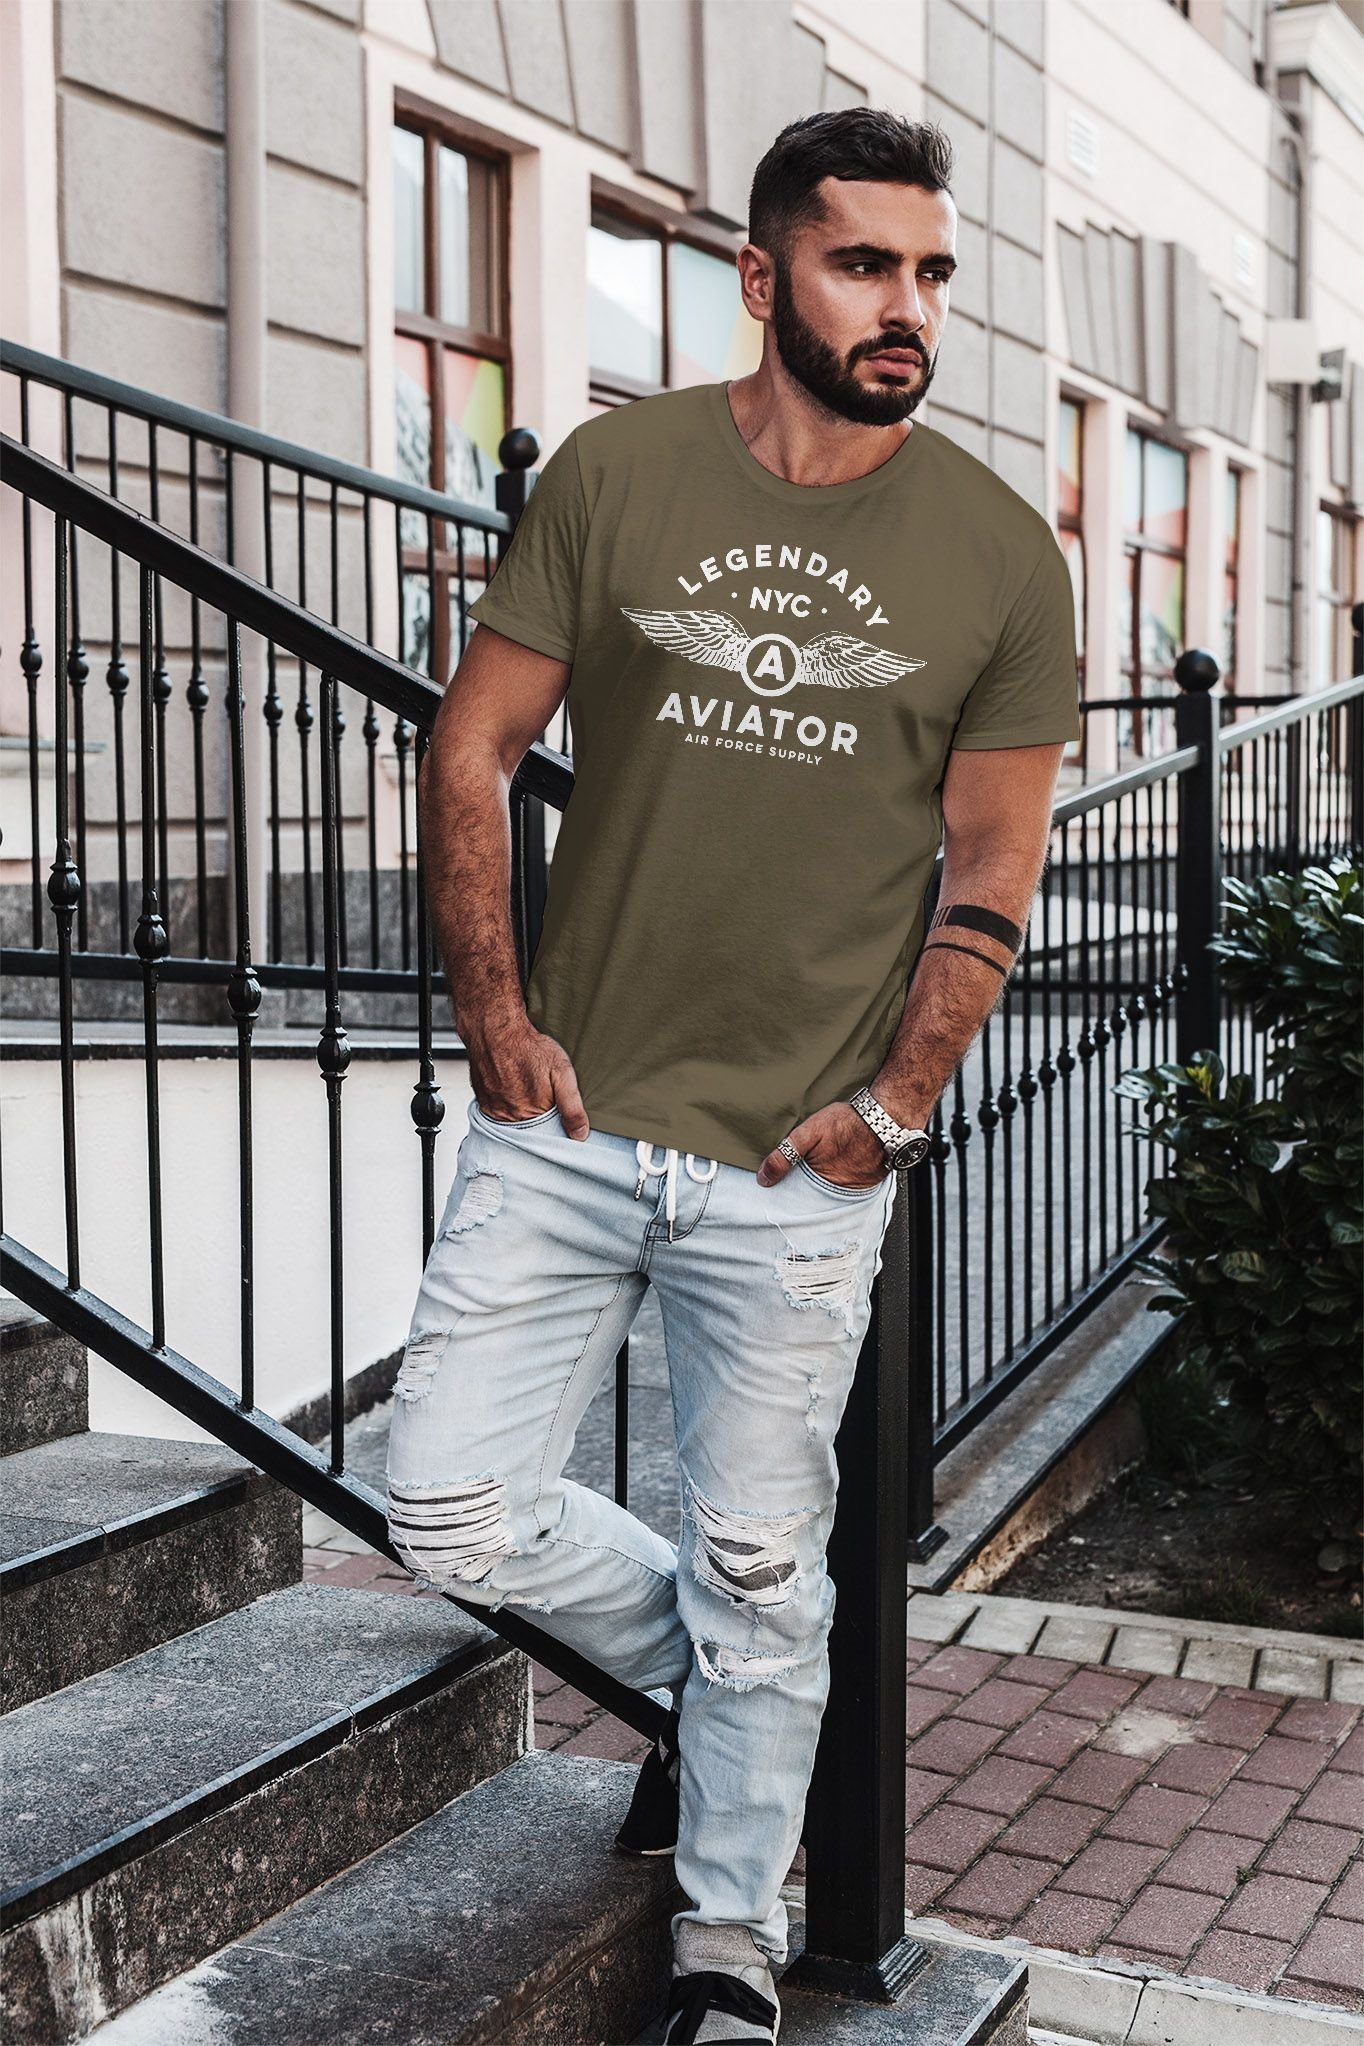 Neverless Print-Shirt Herren NYC Legendary Neverless® Force mit Flügel Aviator Air Streetstyle grün T-Shirt Print Fashion Luftwaffe